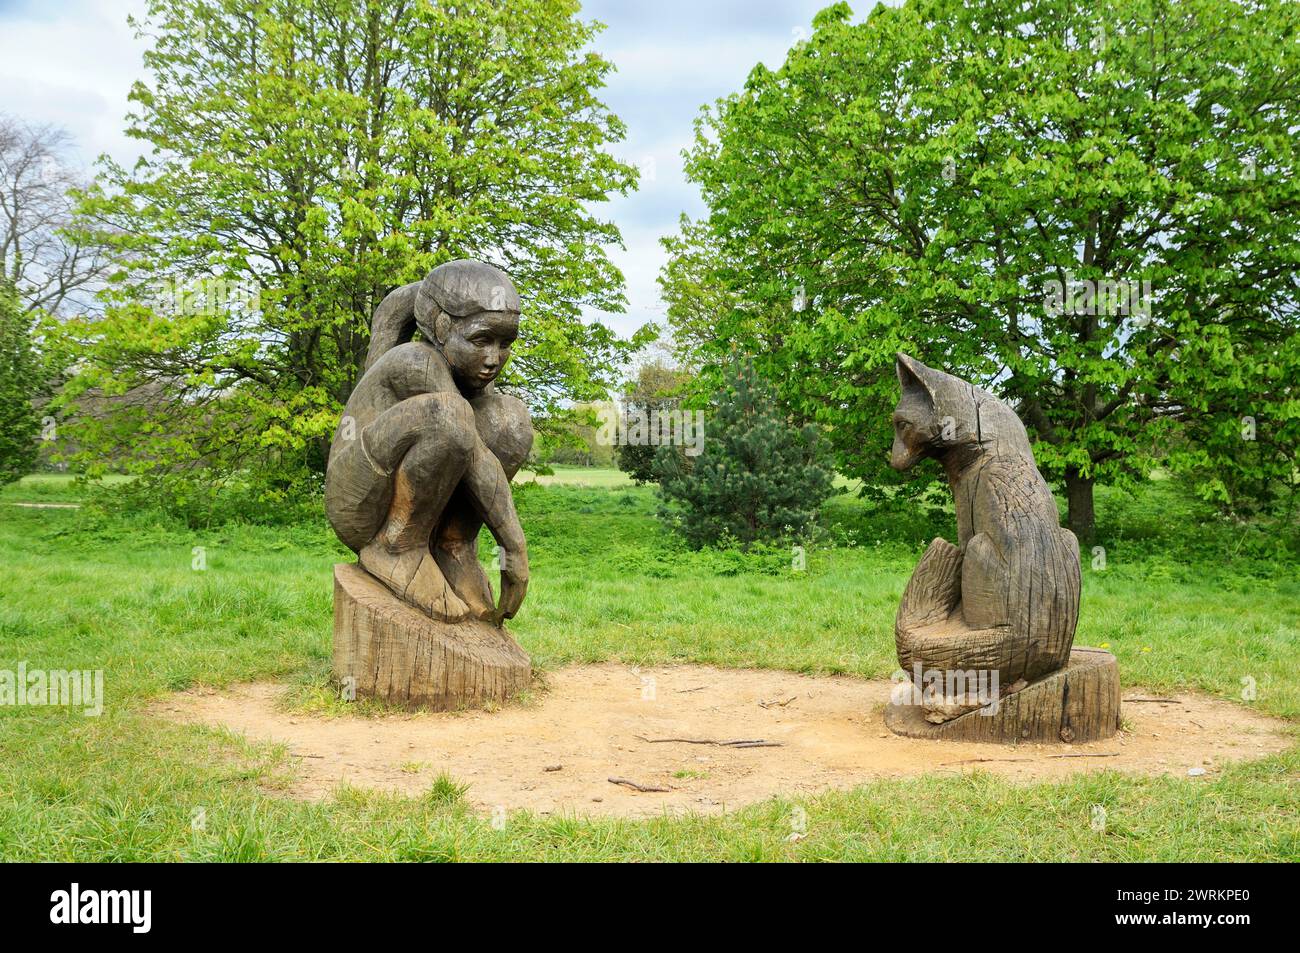 Sculptures en bois Girl and Fox sculptées dans le bois par l'artiste Tom Harvey, Regent's Park, Londres, Angleterre, Royaume-Uni. sculpture en bois statues d'art public Banque D'Images